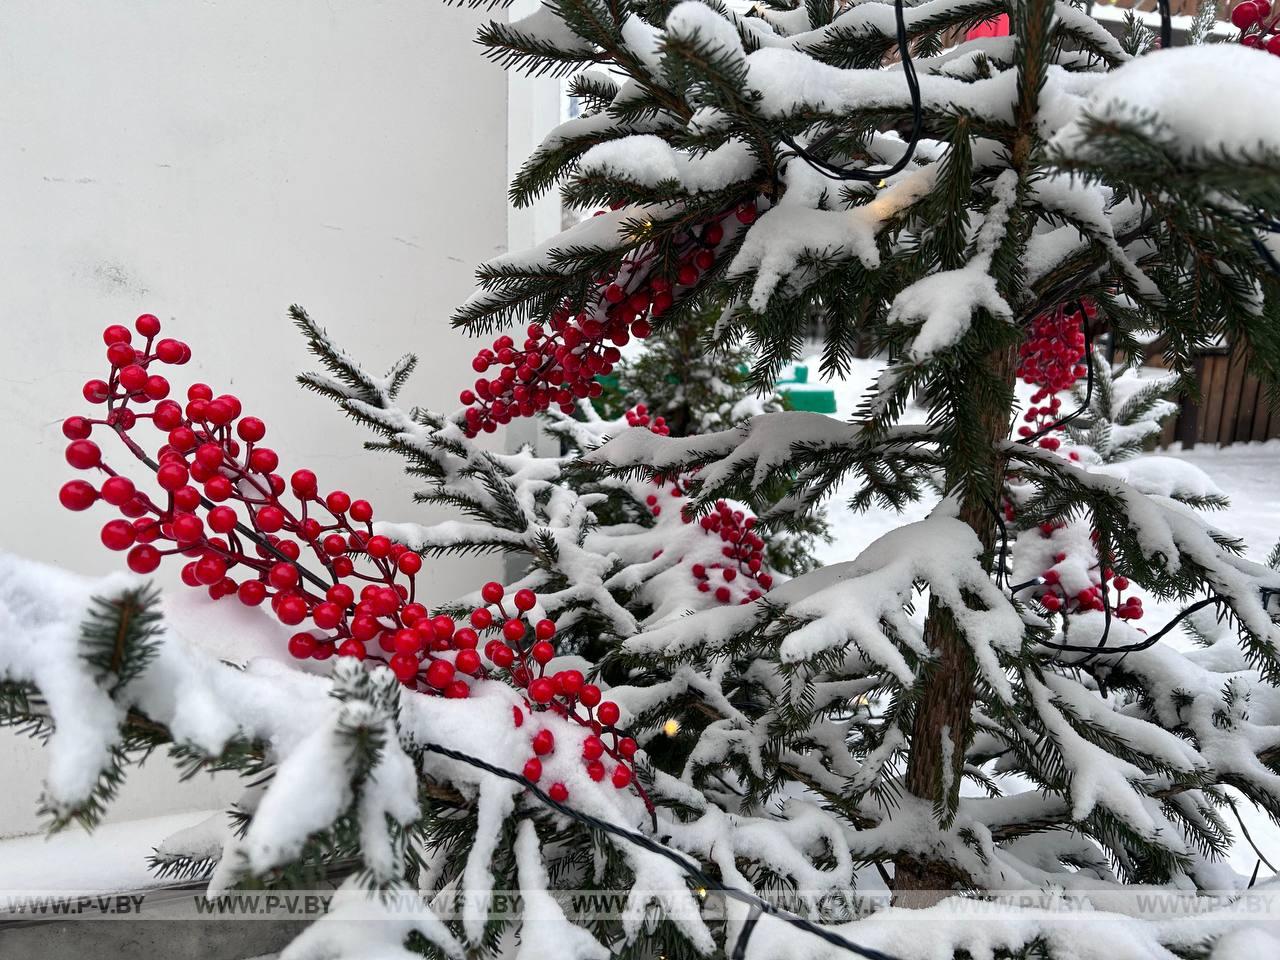 Метель, гололедица и до -24 °С градусов мороза. Синоптики о погоде в Беларуси на этой неделе